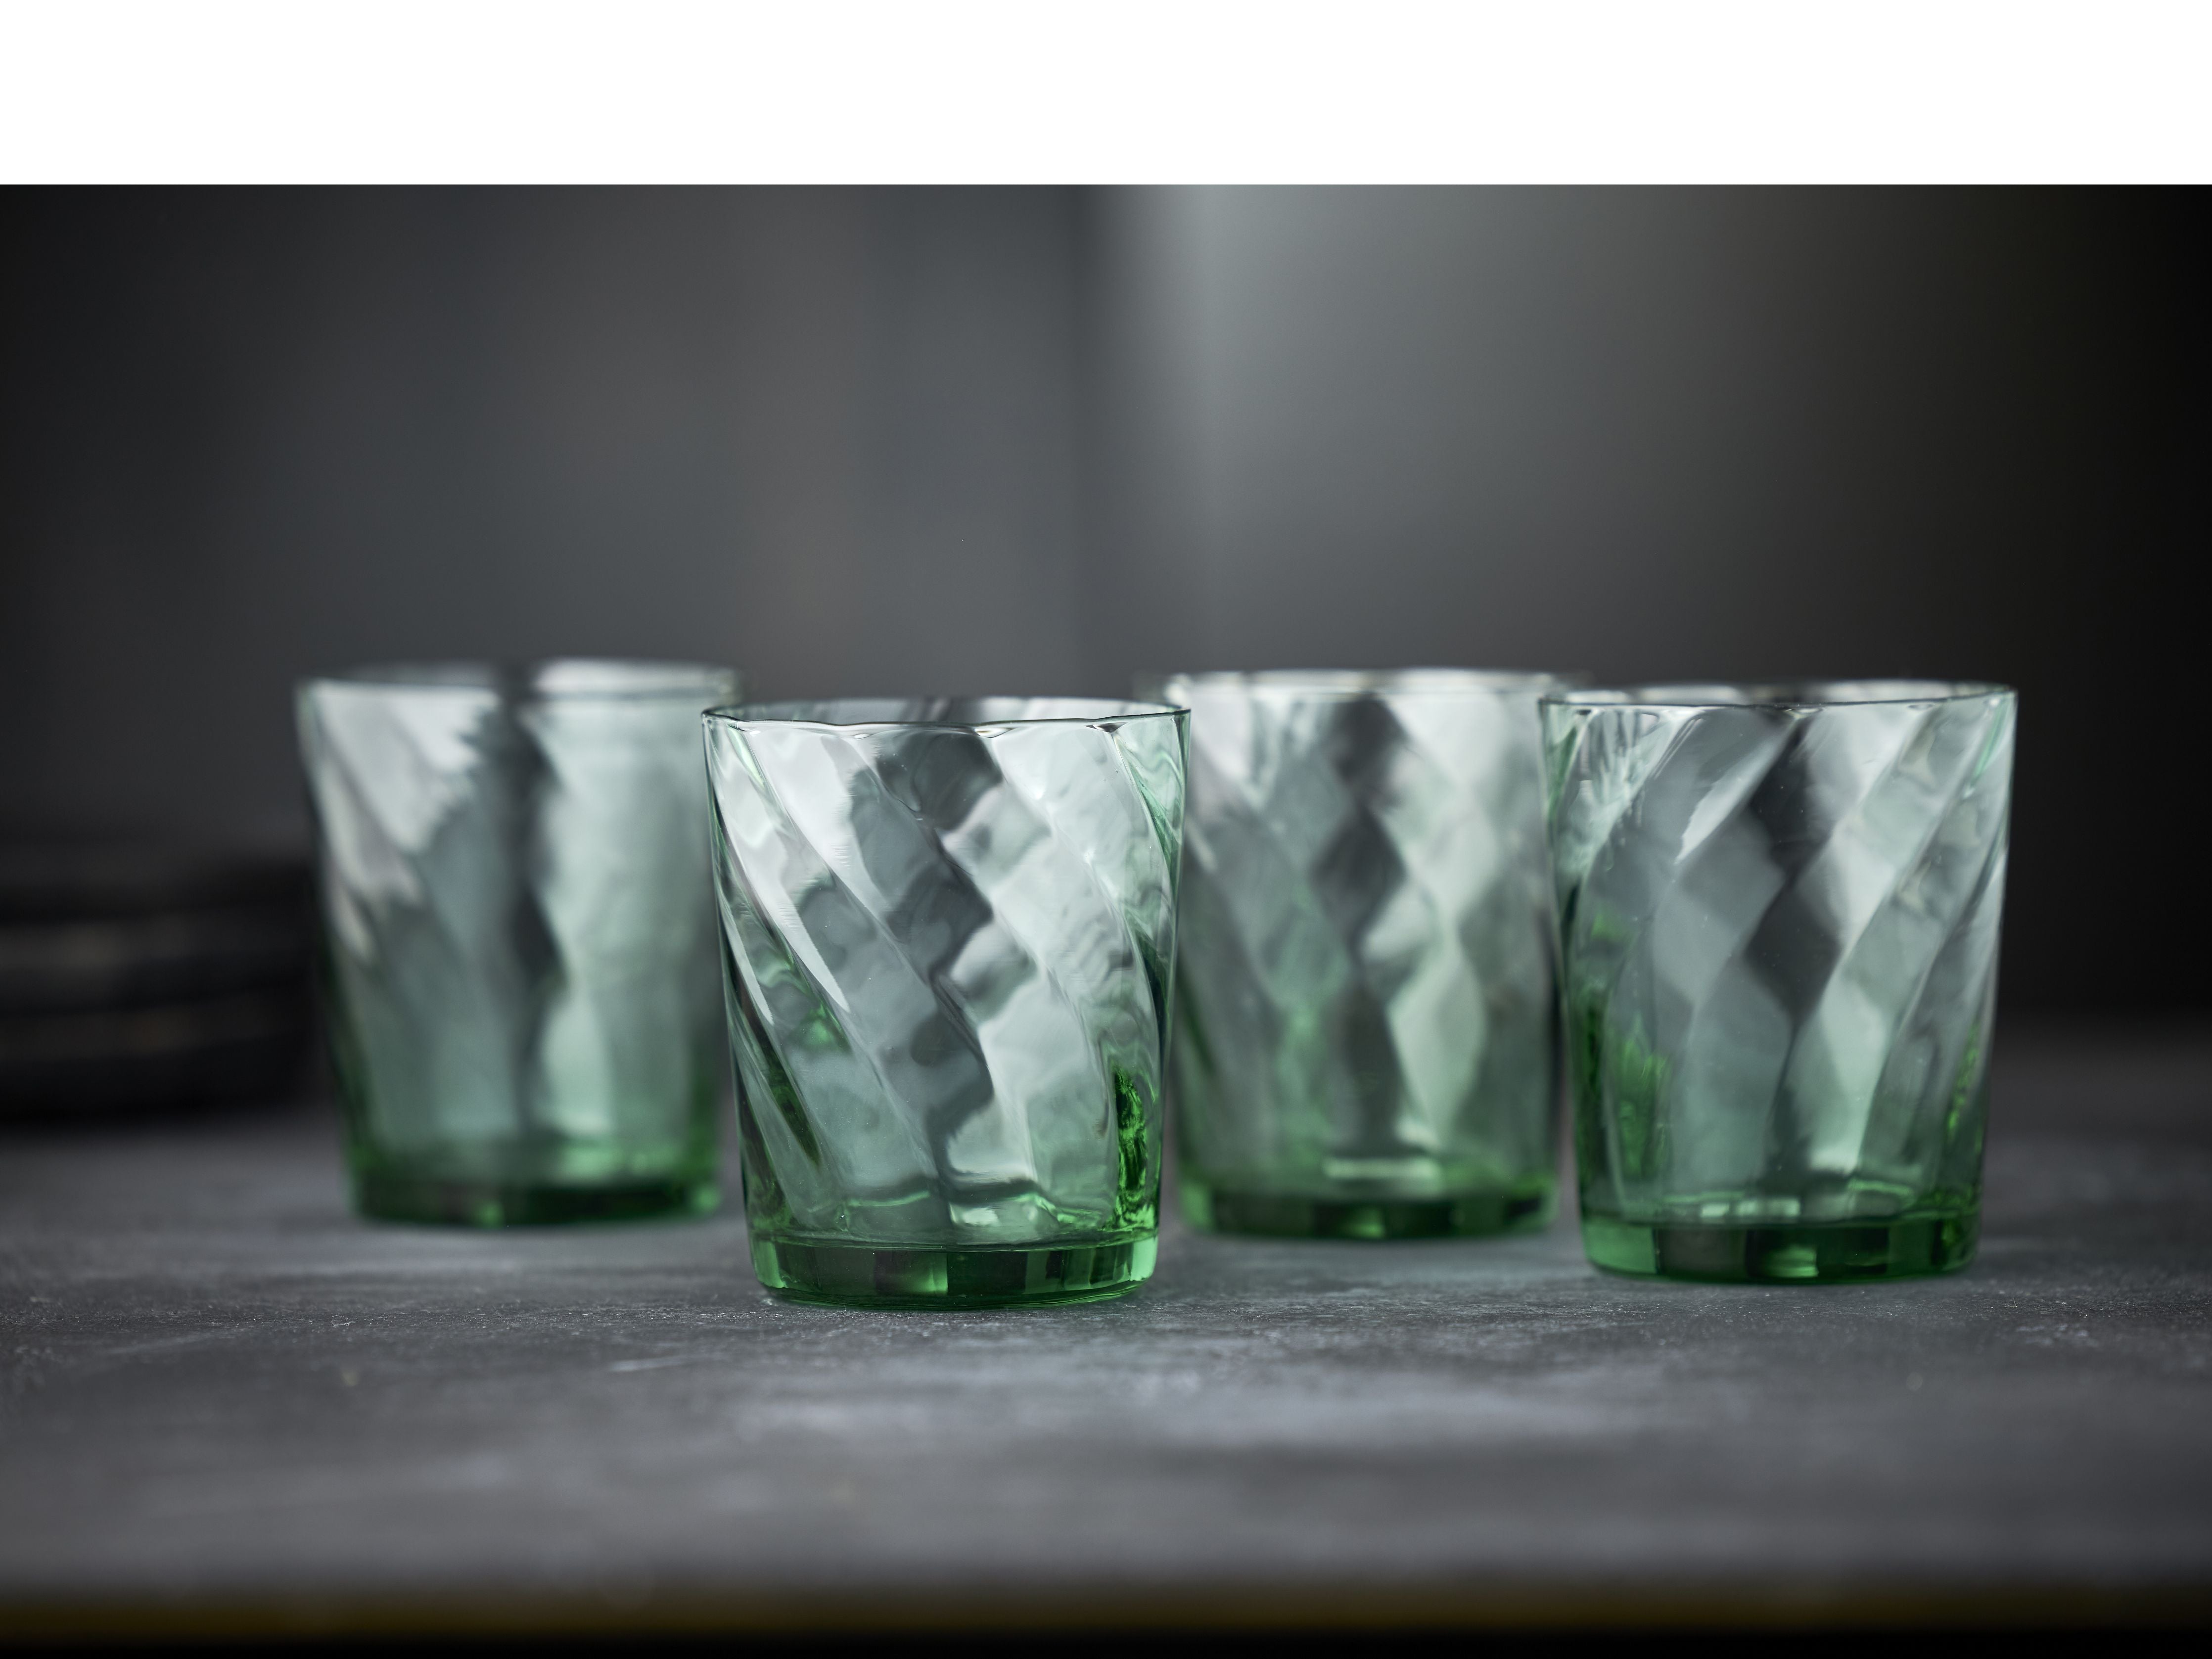 Lyngby Glas Vienna Glass de agua 30 Cl 4 Pcs, verde